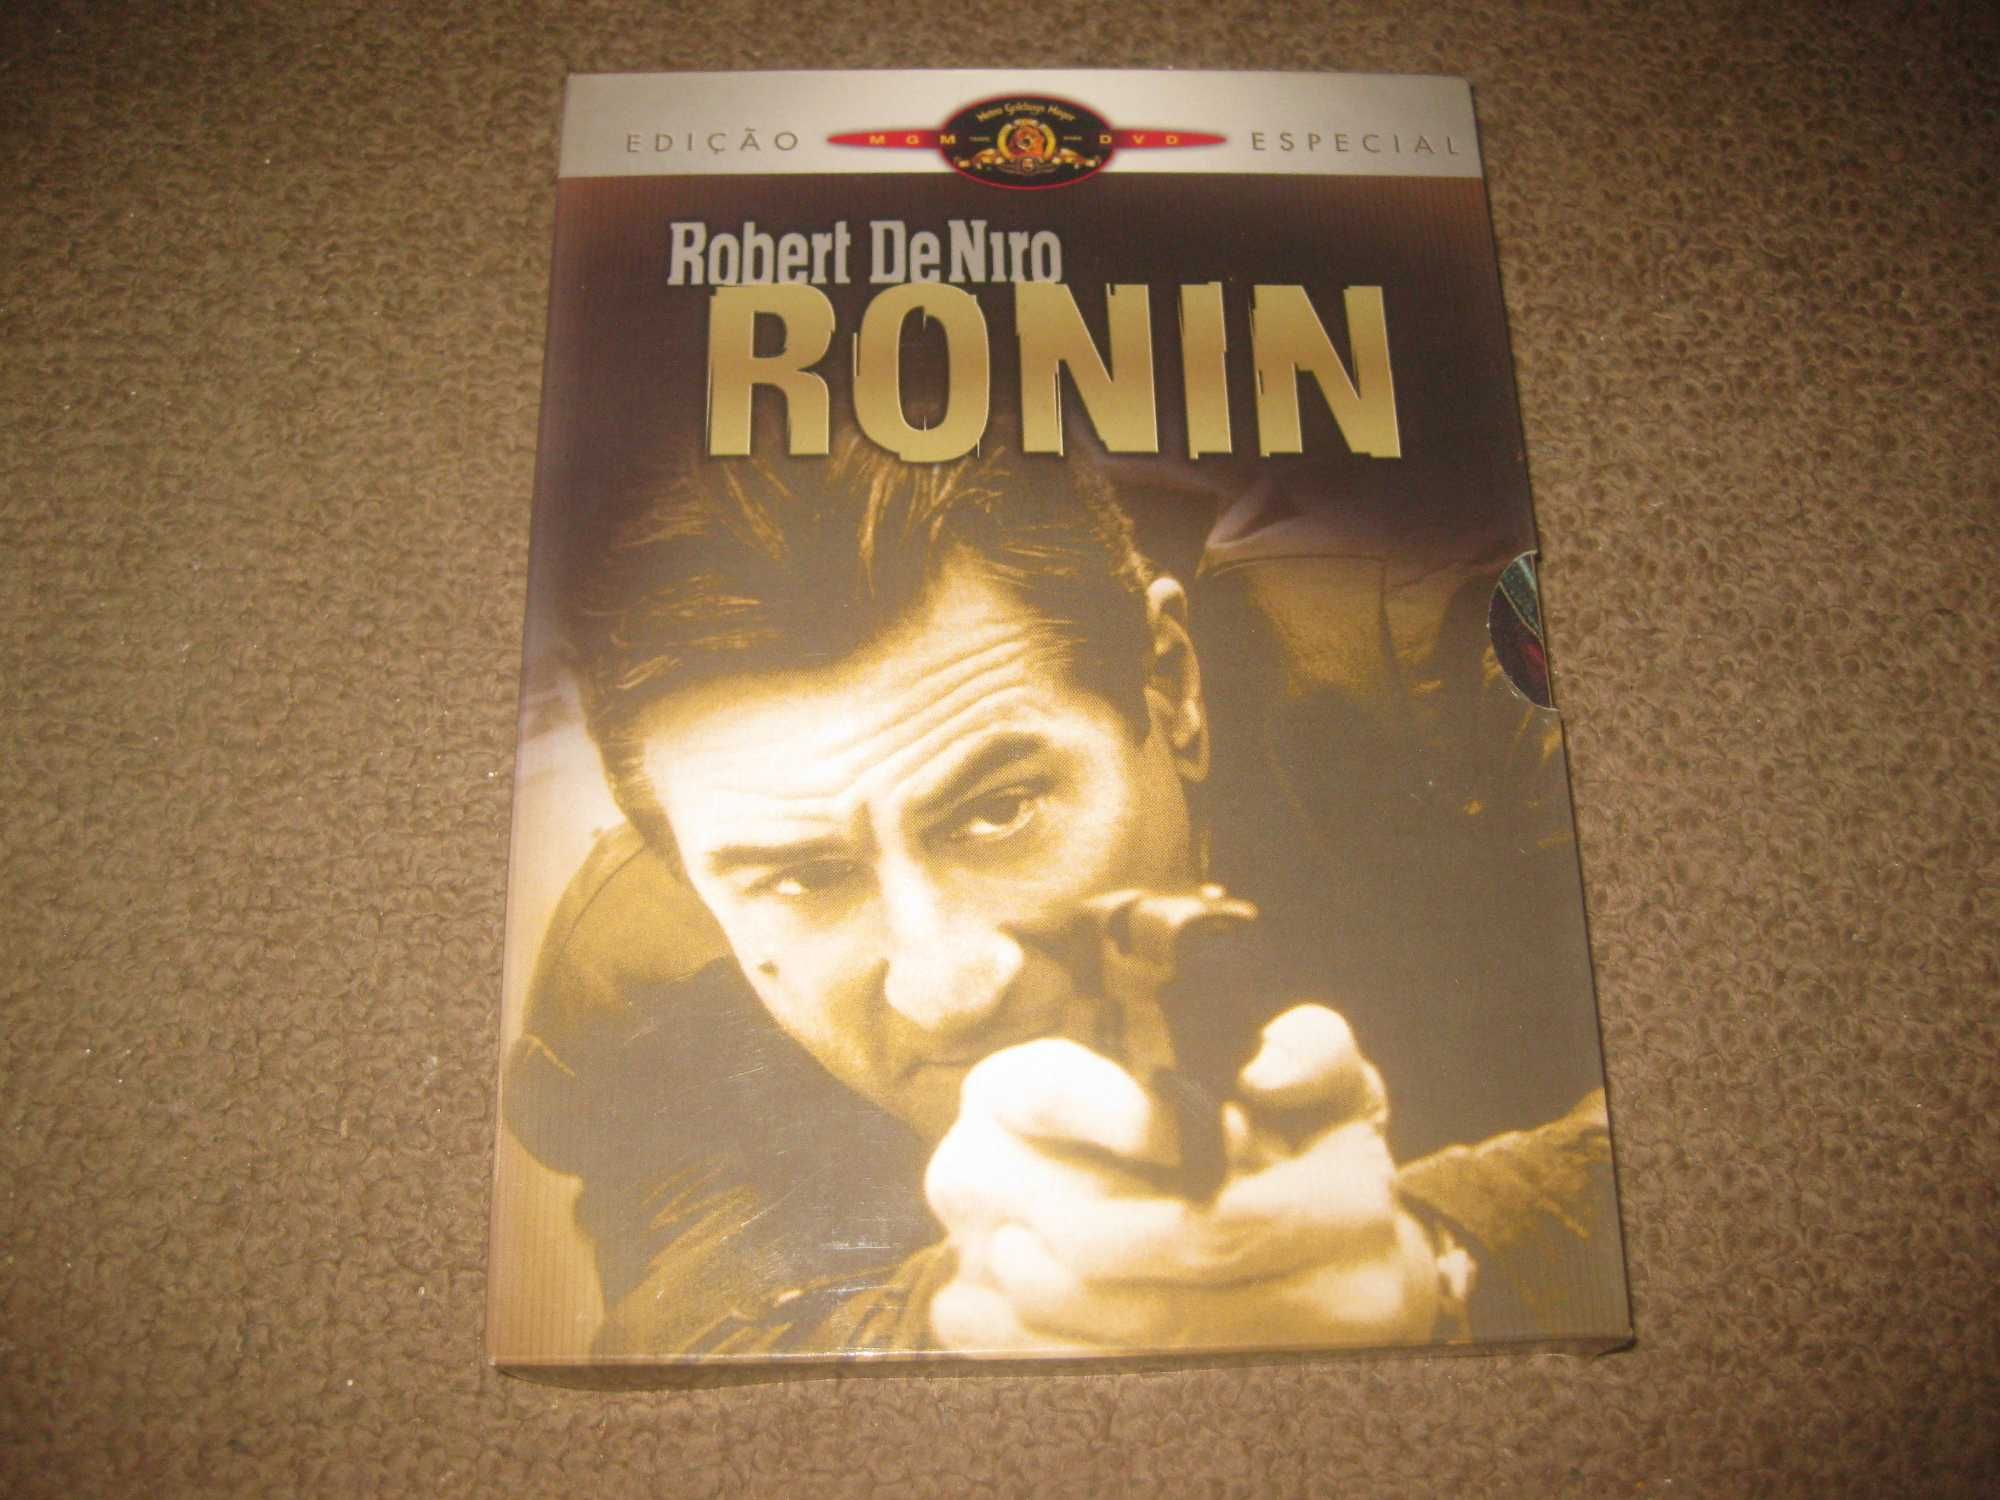 "Ronin" com Robert De Niro/Edição Digipack com 2 DVDs